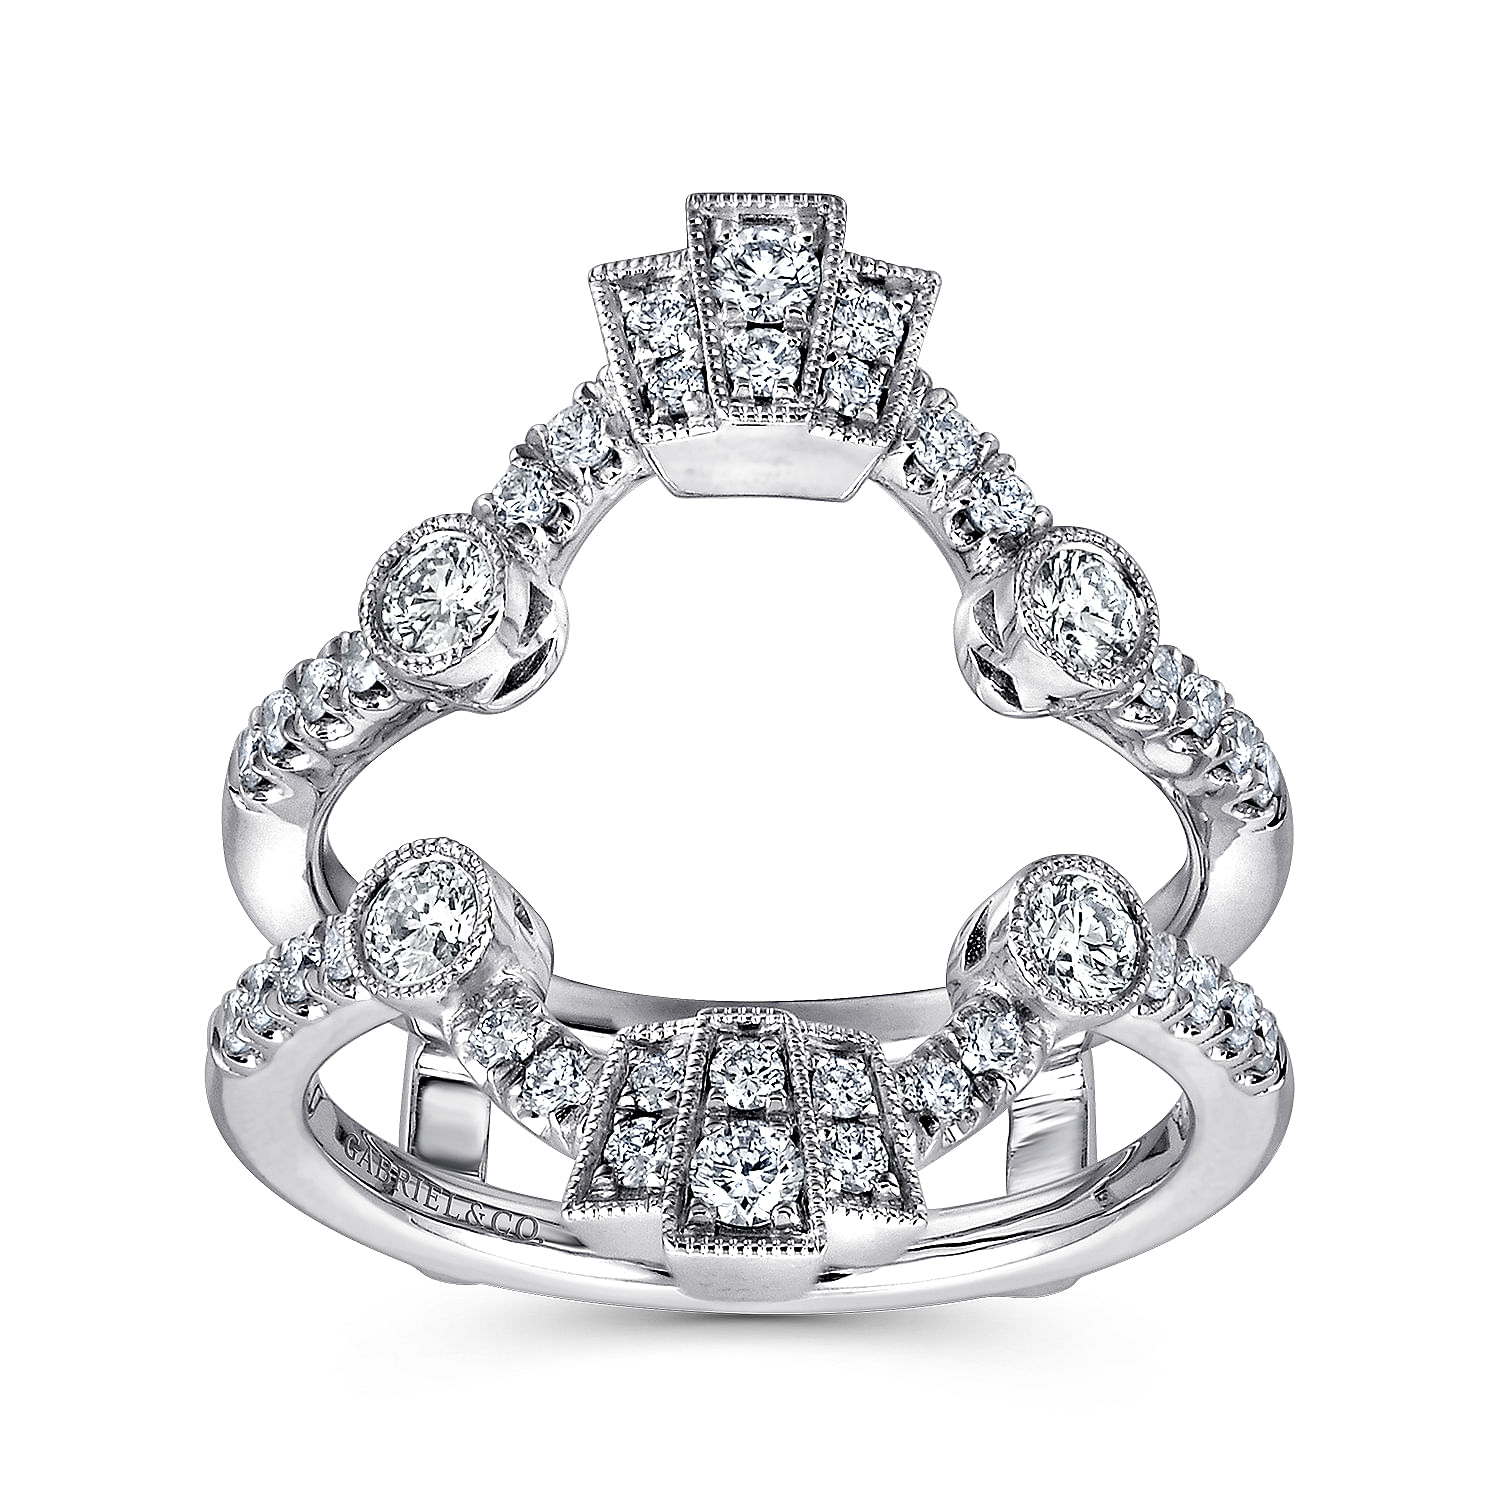 Vintage Inspired 14K White Gold Diamond Ring Enhancer